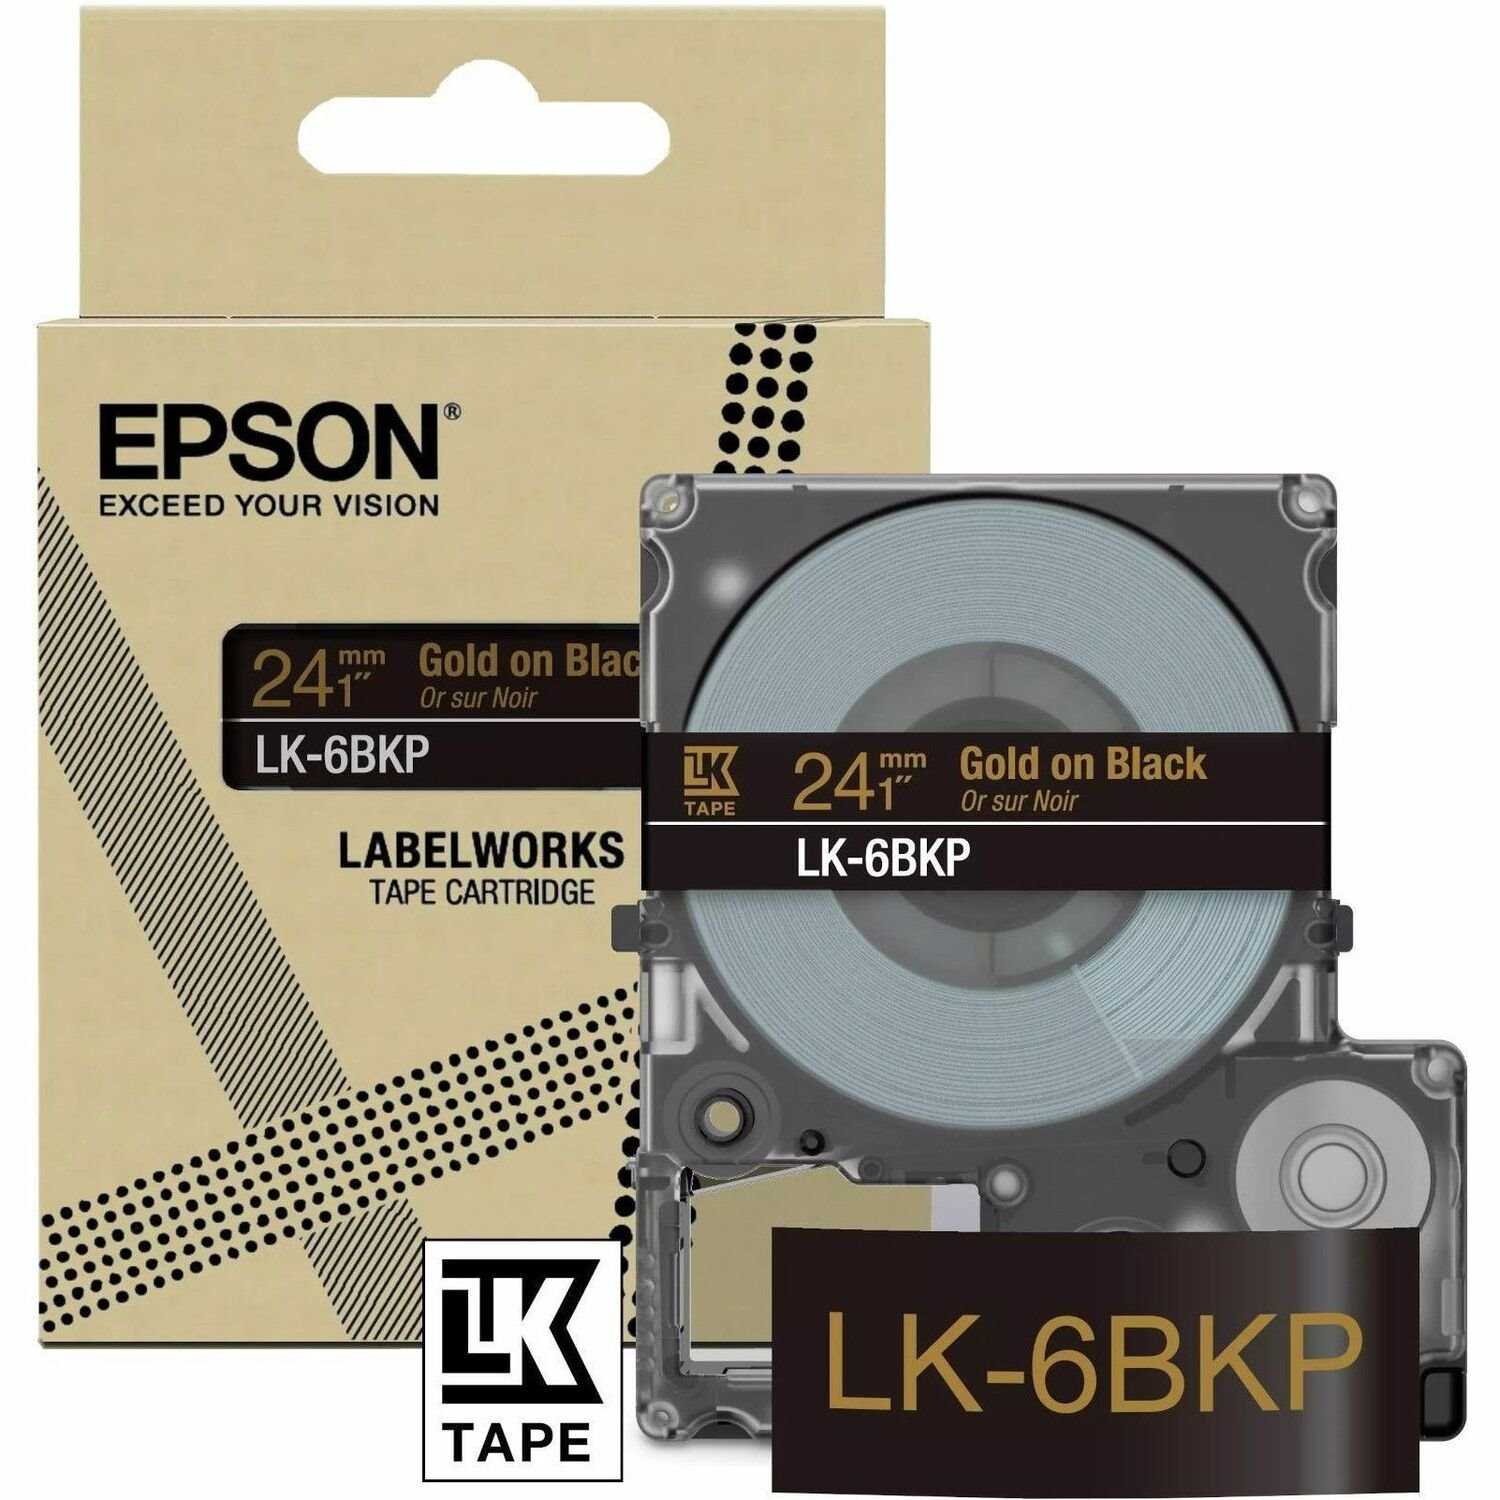 Epson LK-6BKP Label Tape